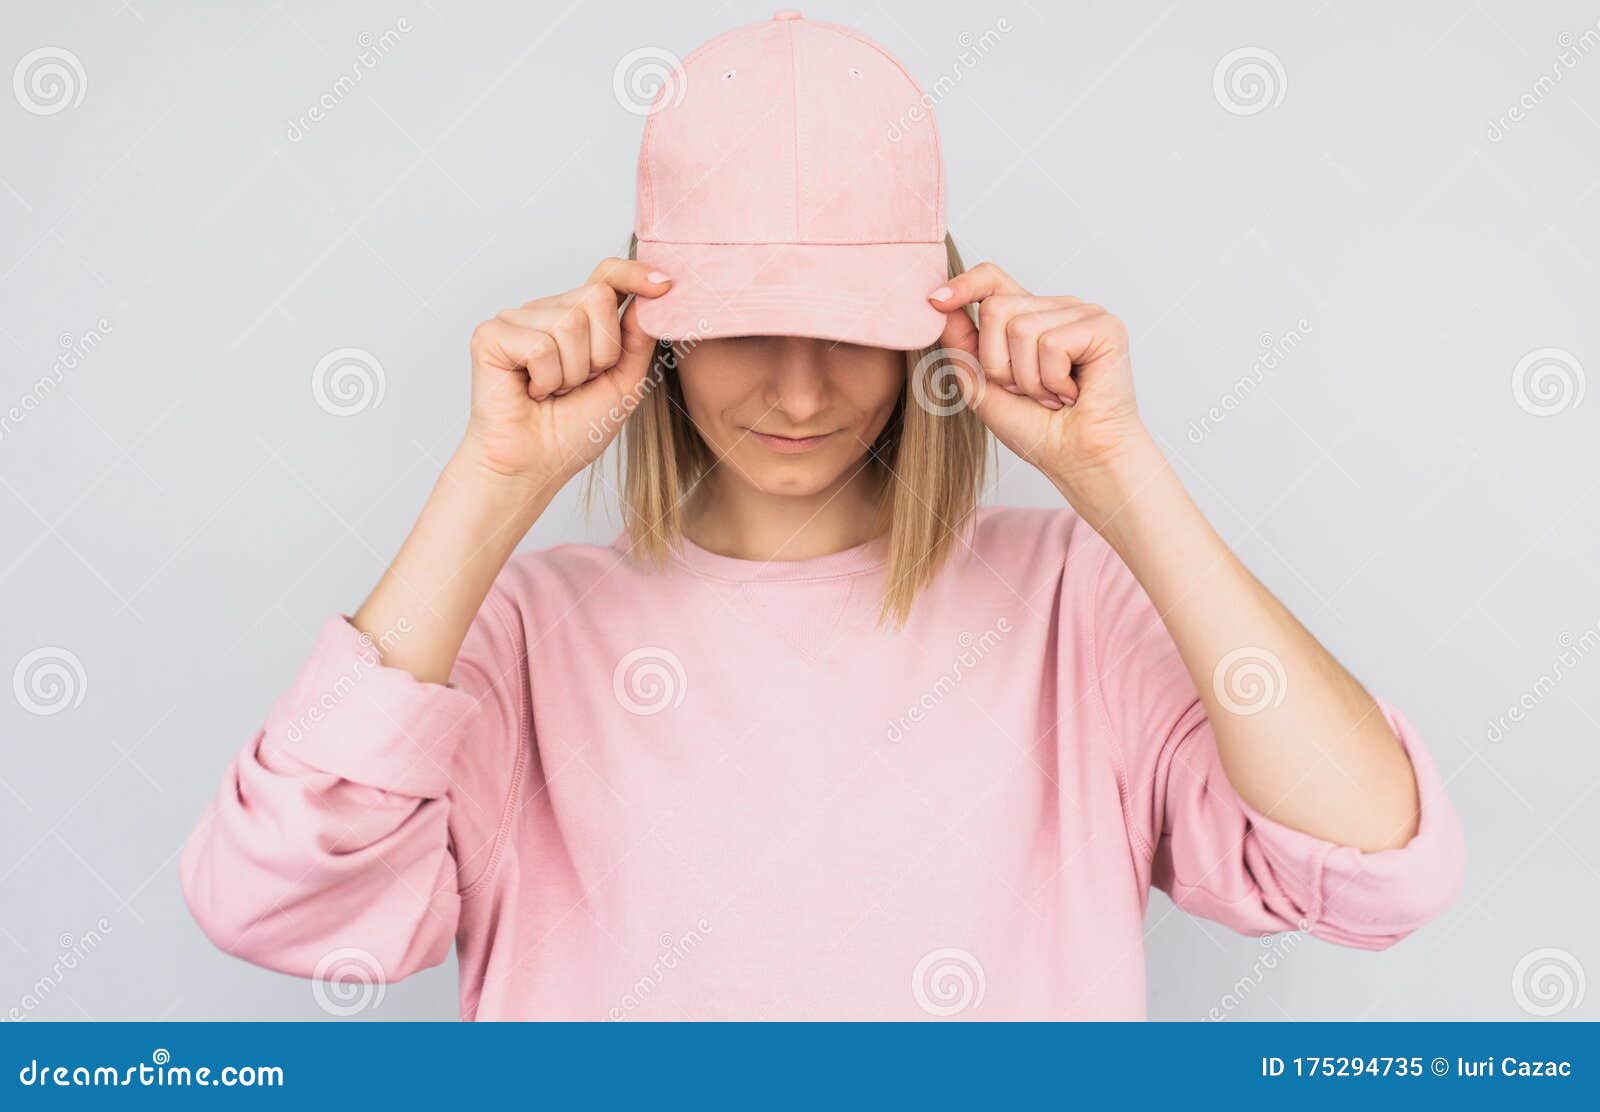 cap wearing blonde pink nude photo